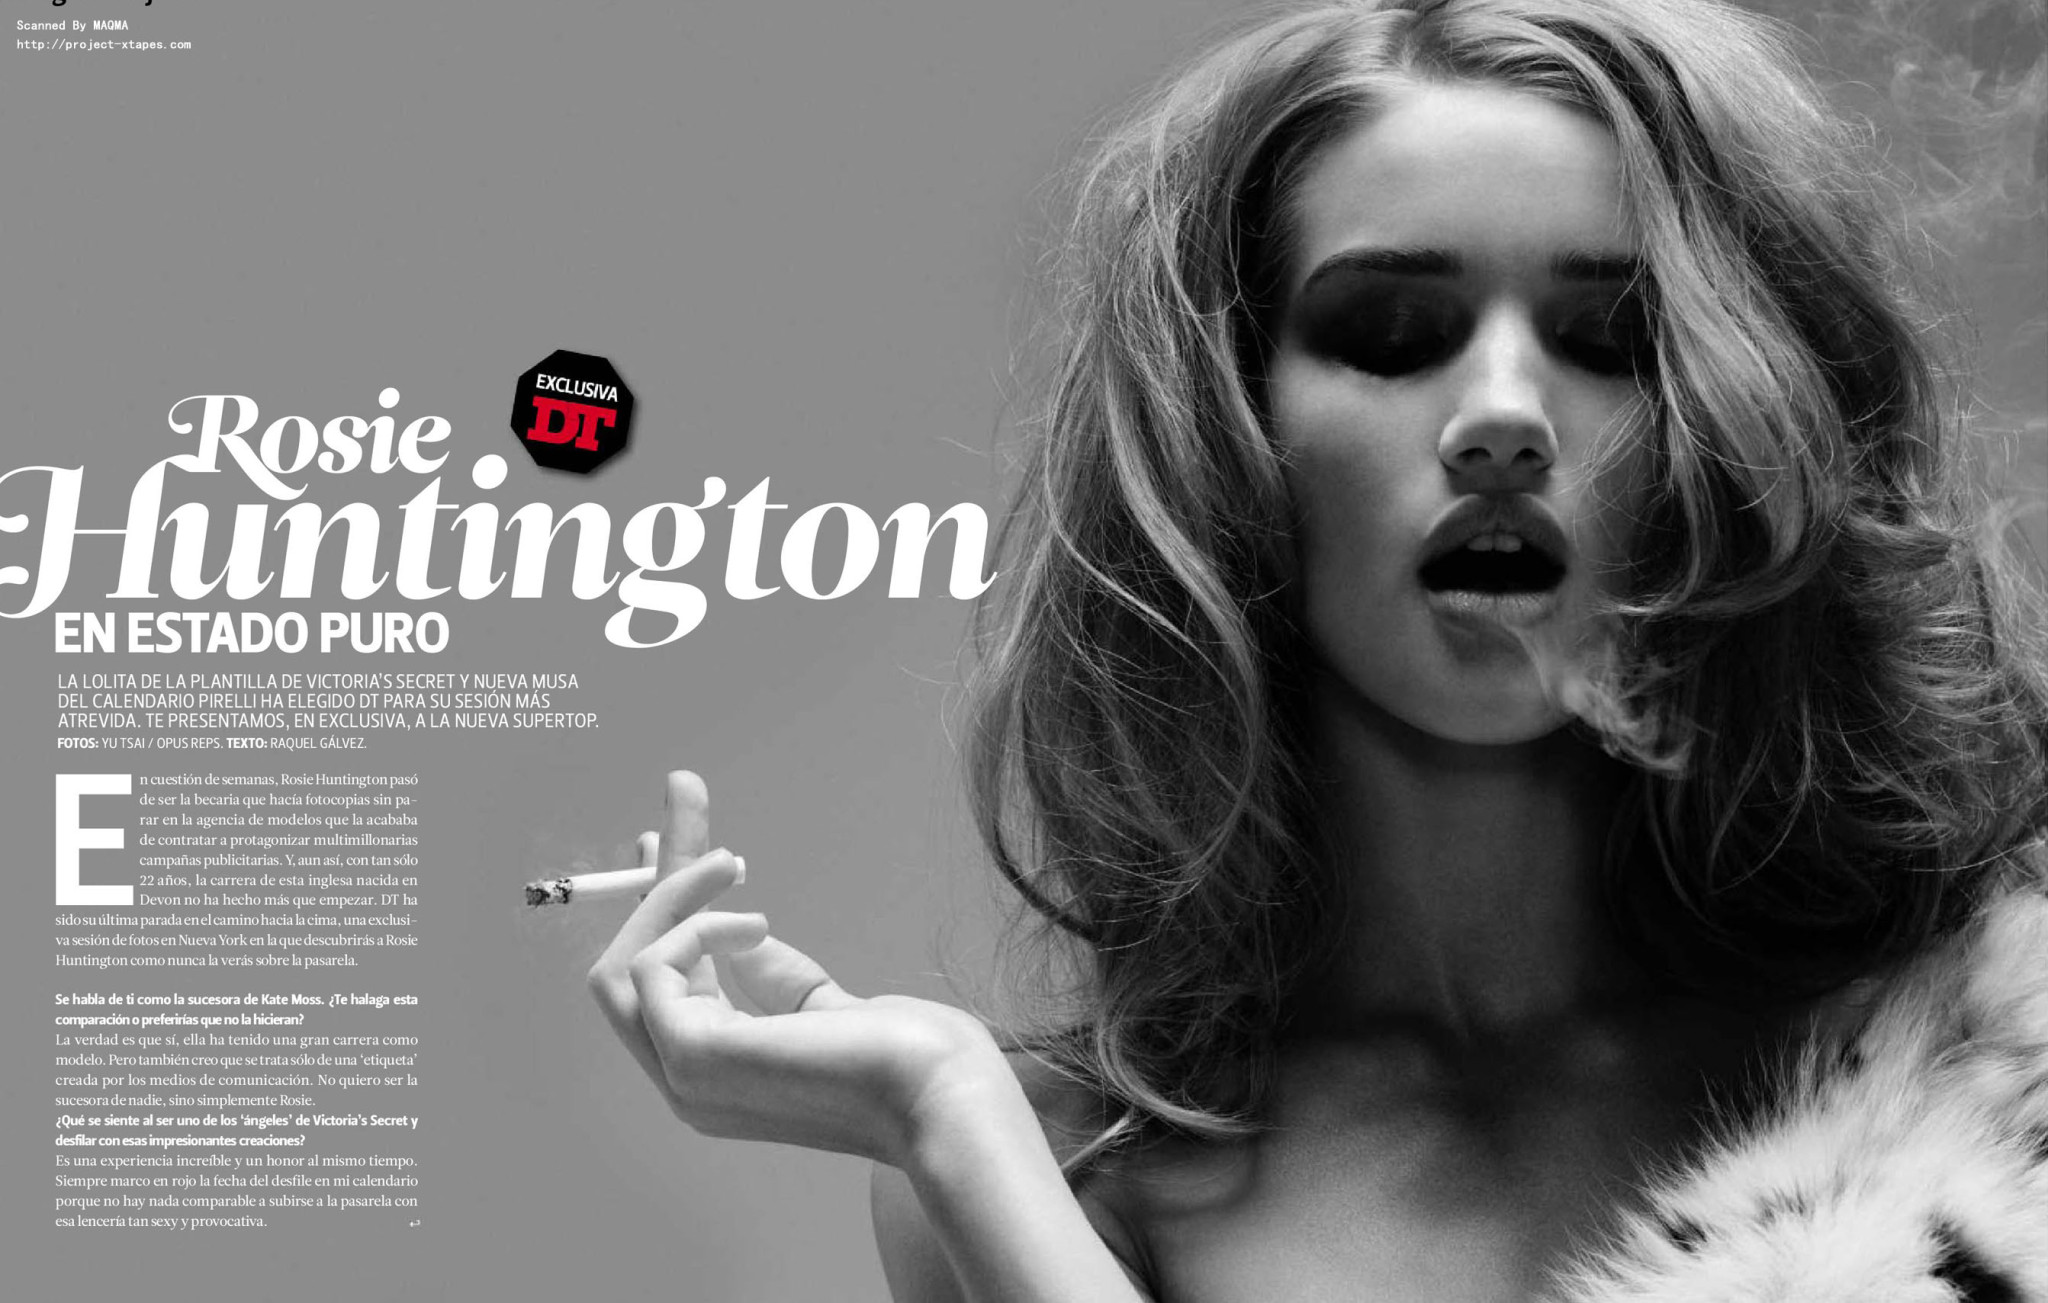 Rosie huntington-whiteley posiert oben ohne für die Januar-Ausgabe 2011 der spanischen dt 'z
 #75323493